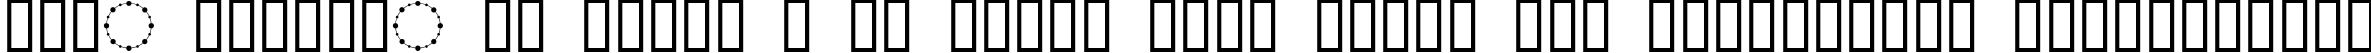 Пример написания шрифтом Crop Circle Dingbats текста на украинском